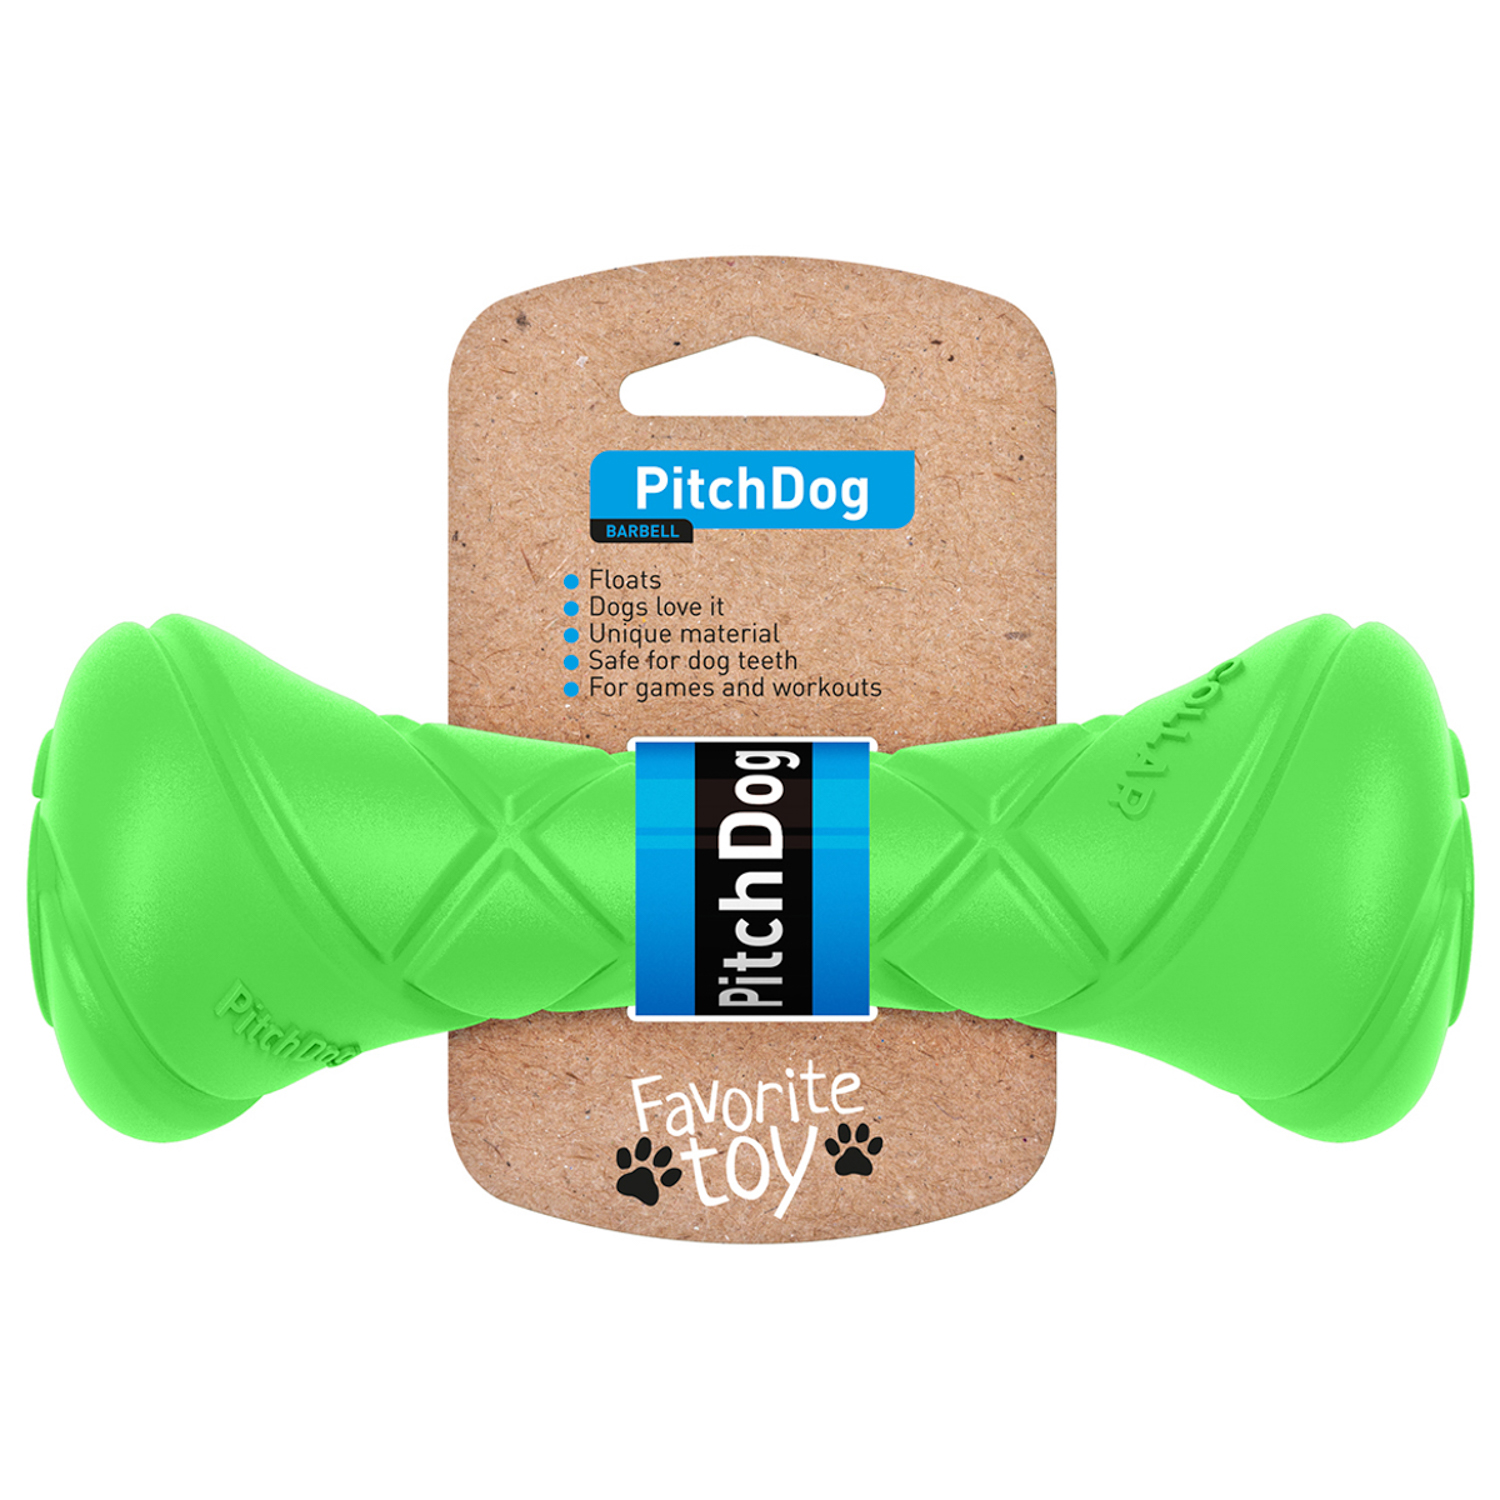 Грейфер (игрушка для перетягивания) для собак PitchDog , зеленый, 19 см, диаметр 7 см